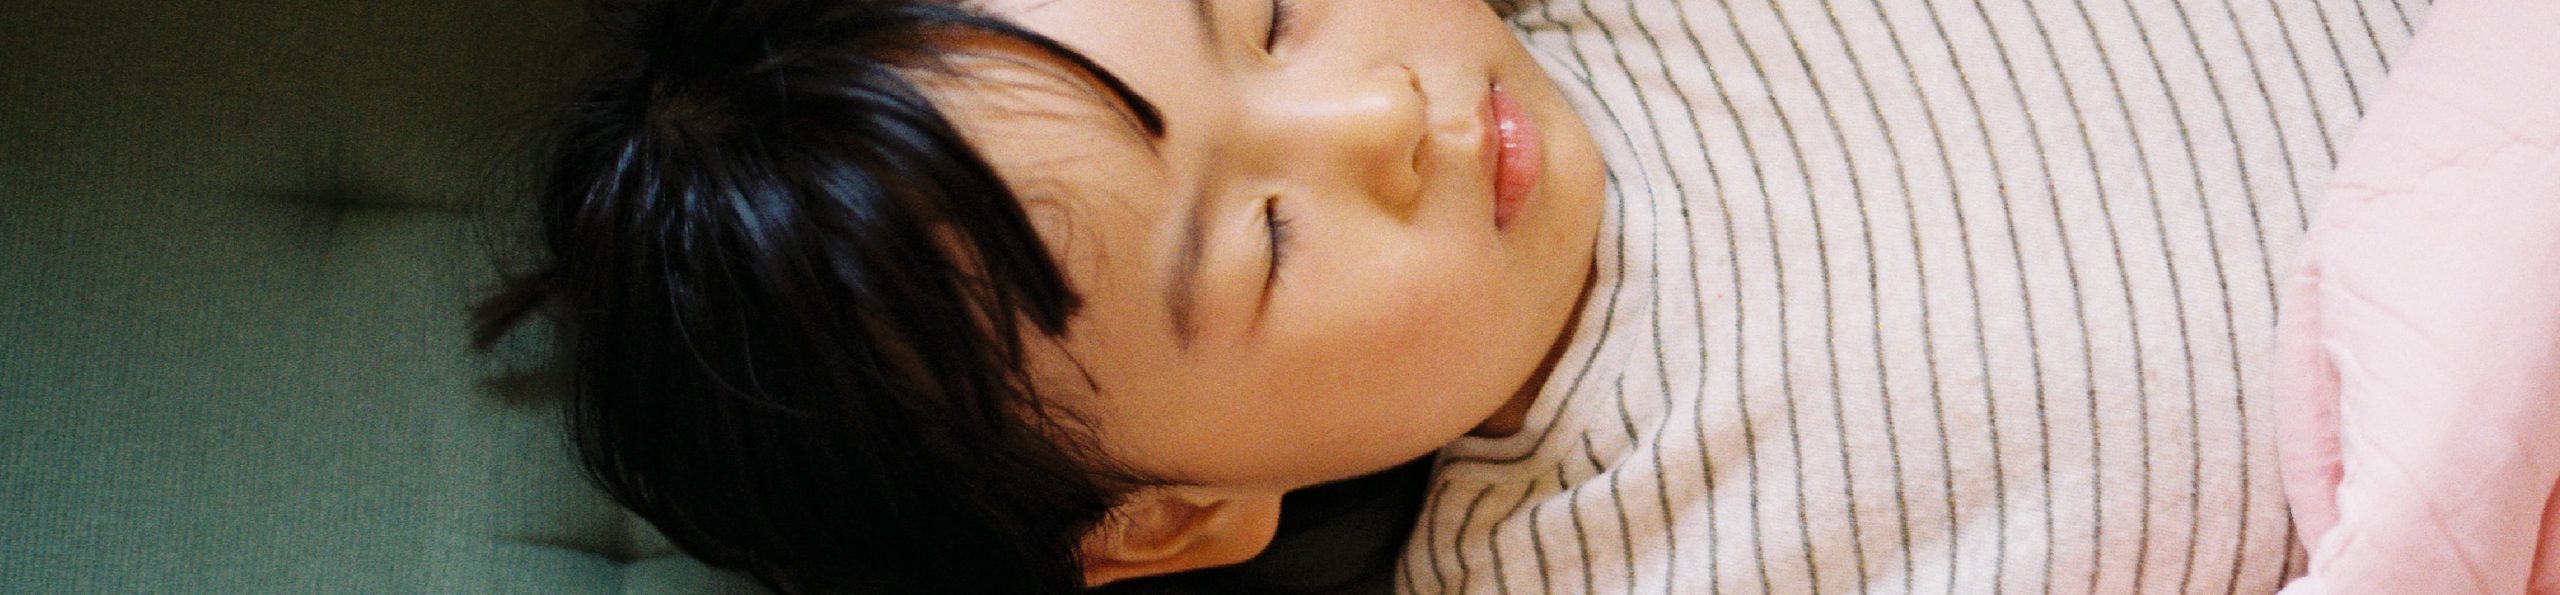 Ronflement chez l'enfant : et si c'était de l'apnée du sommeil ?